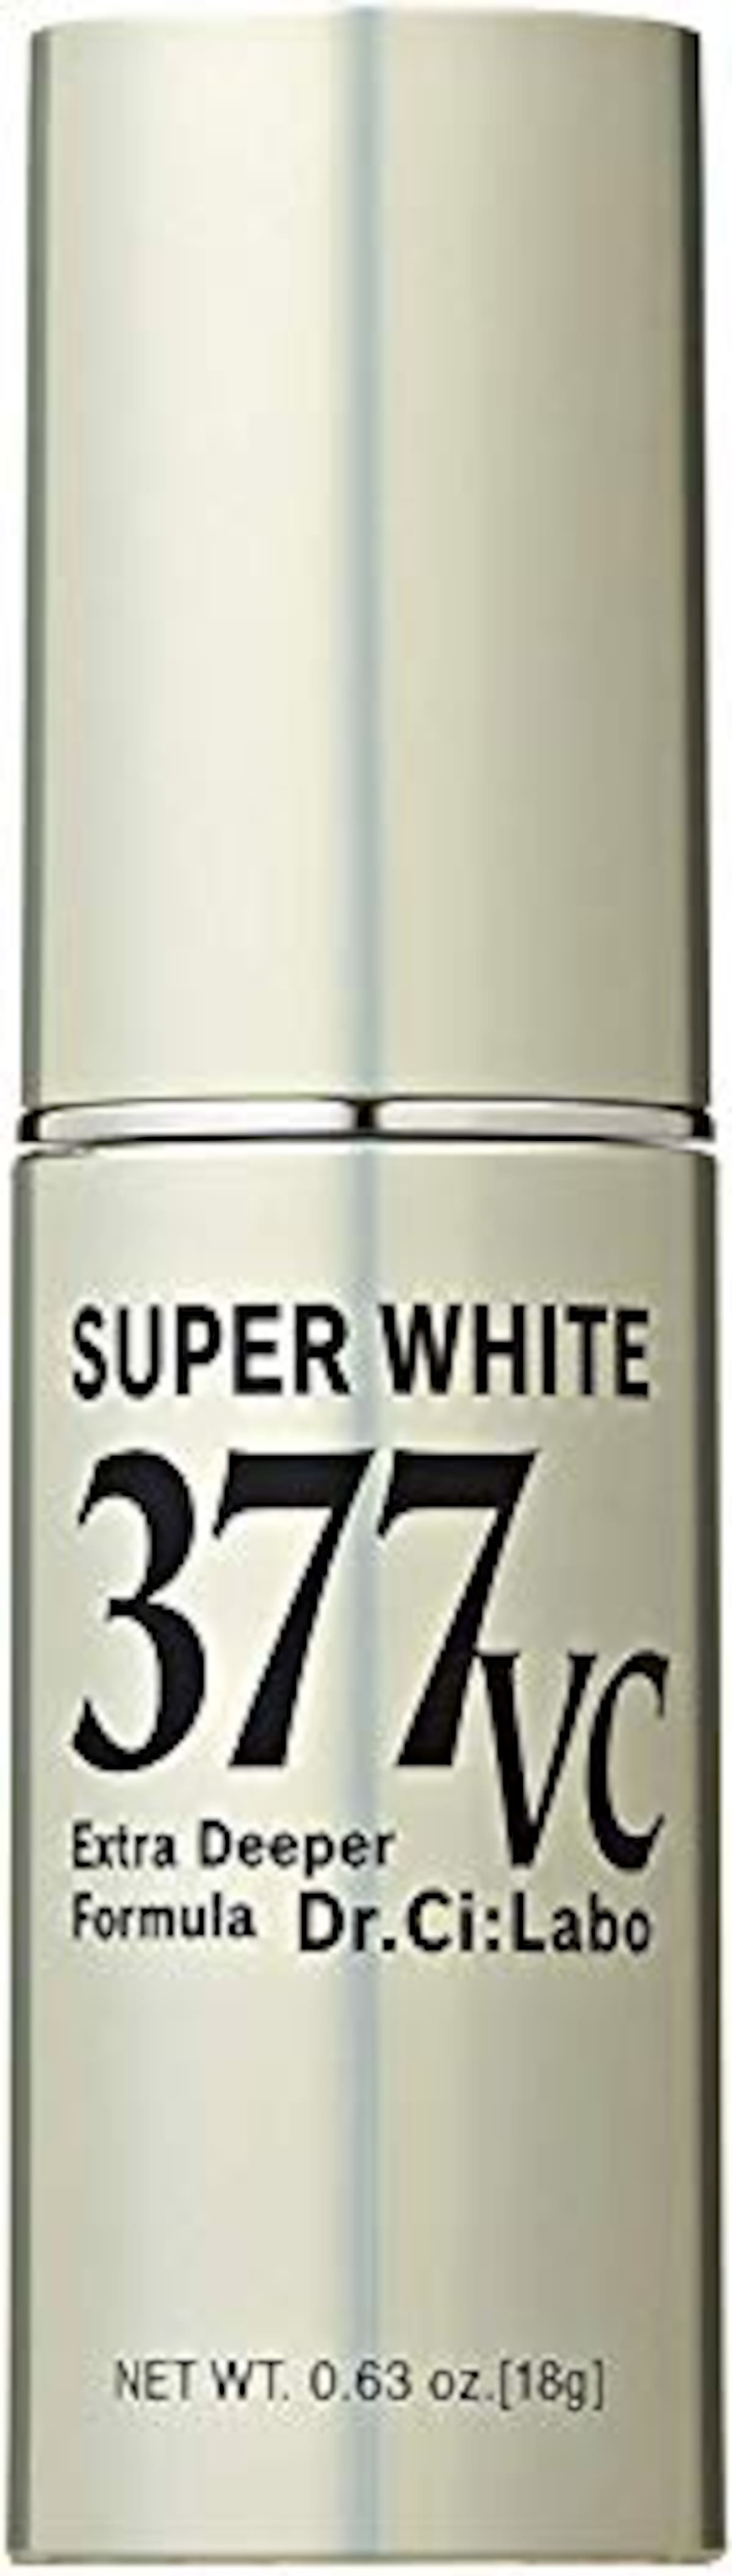 スーパーホワイト377VC 高浸透ビタミンC 美容液